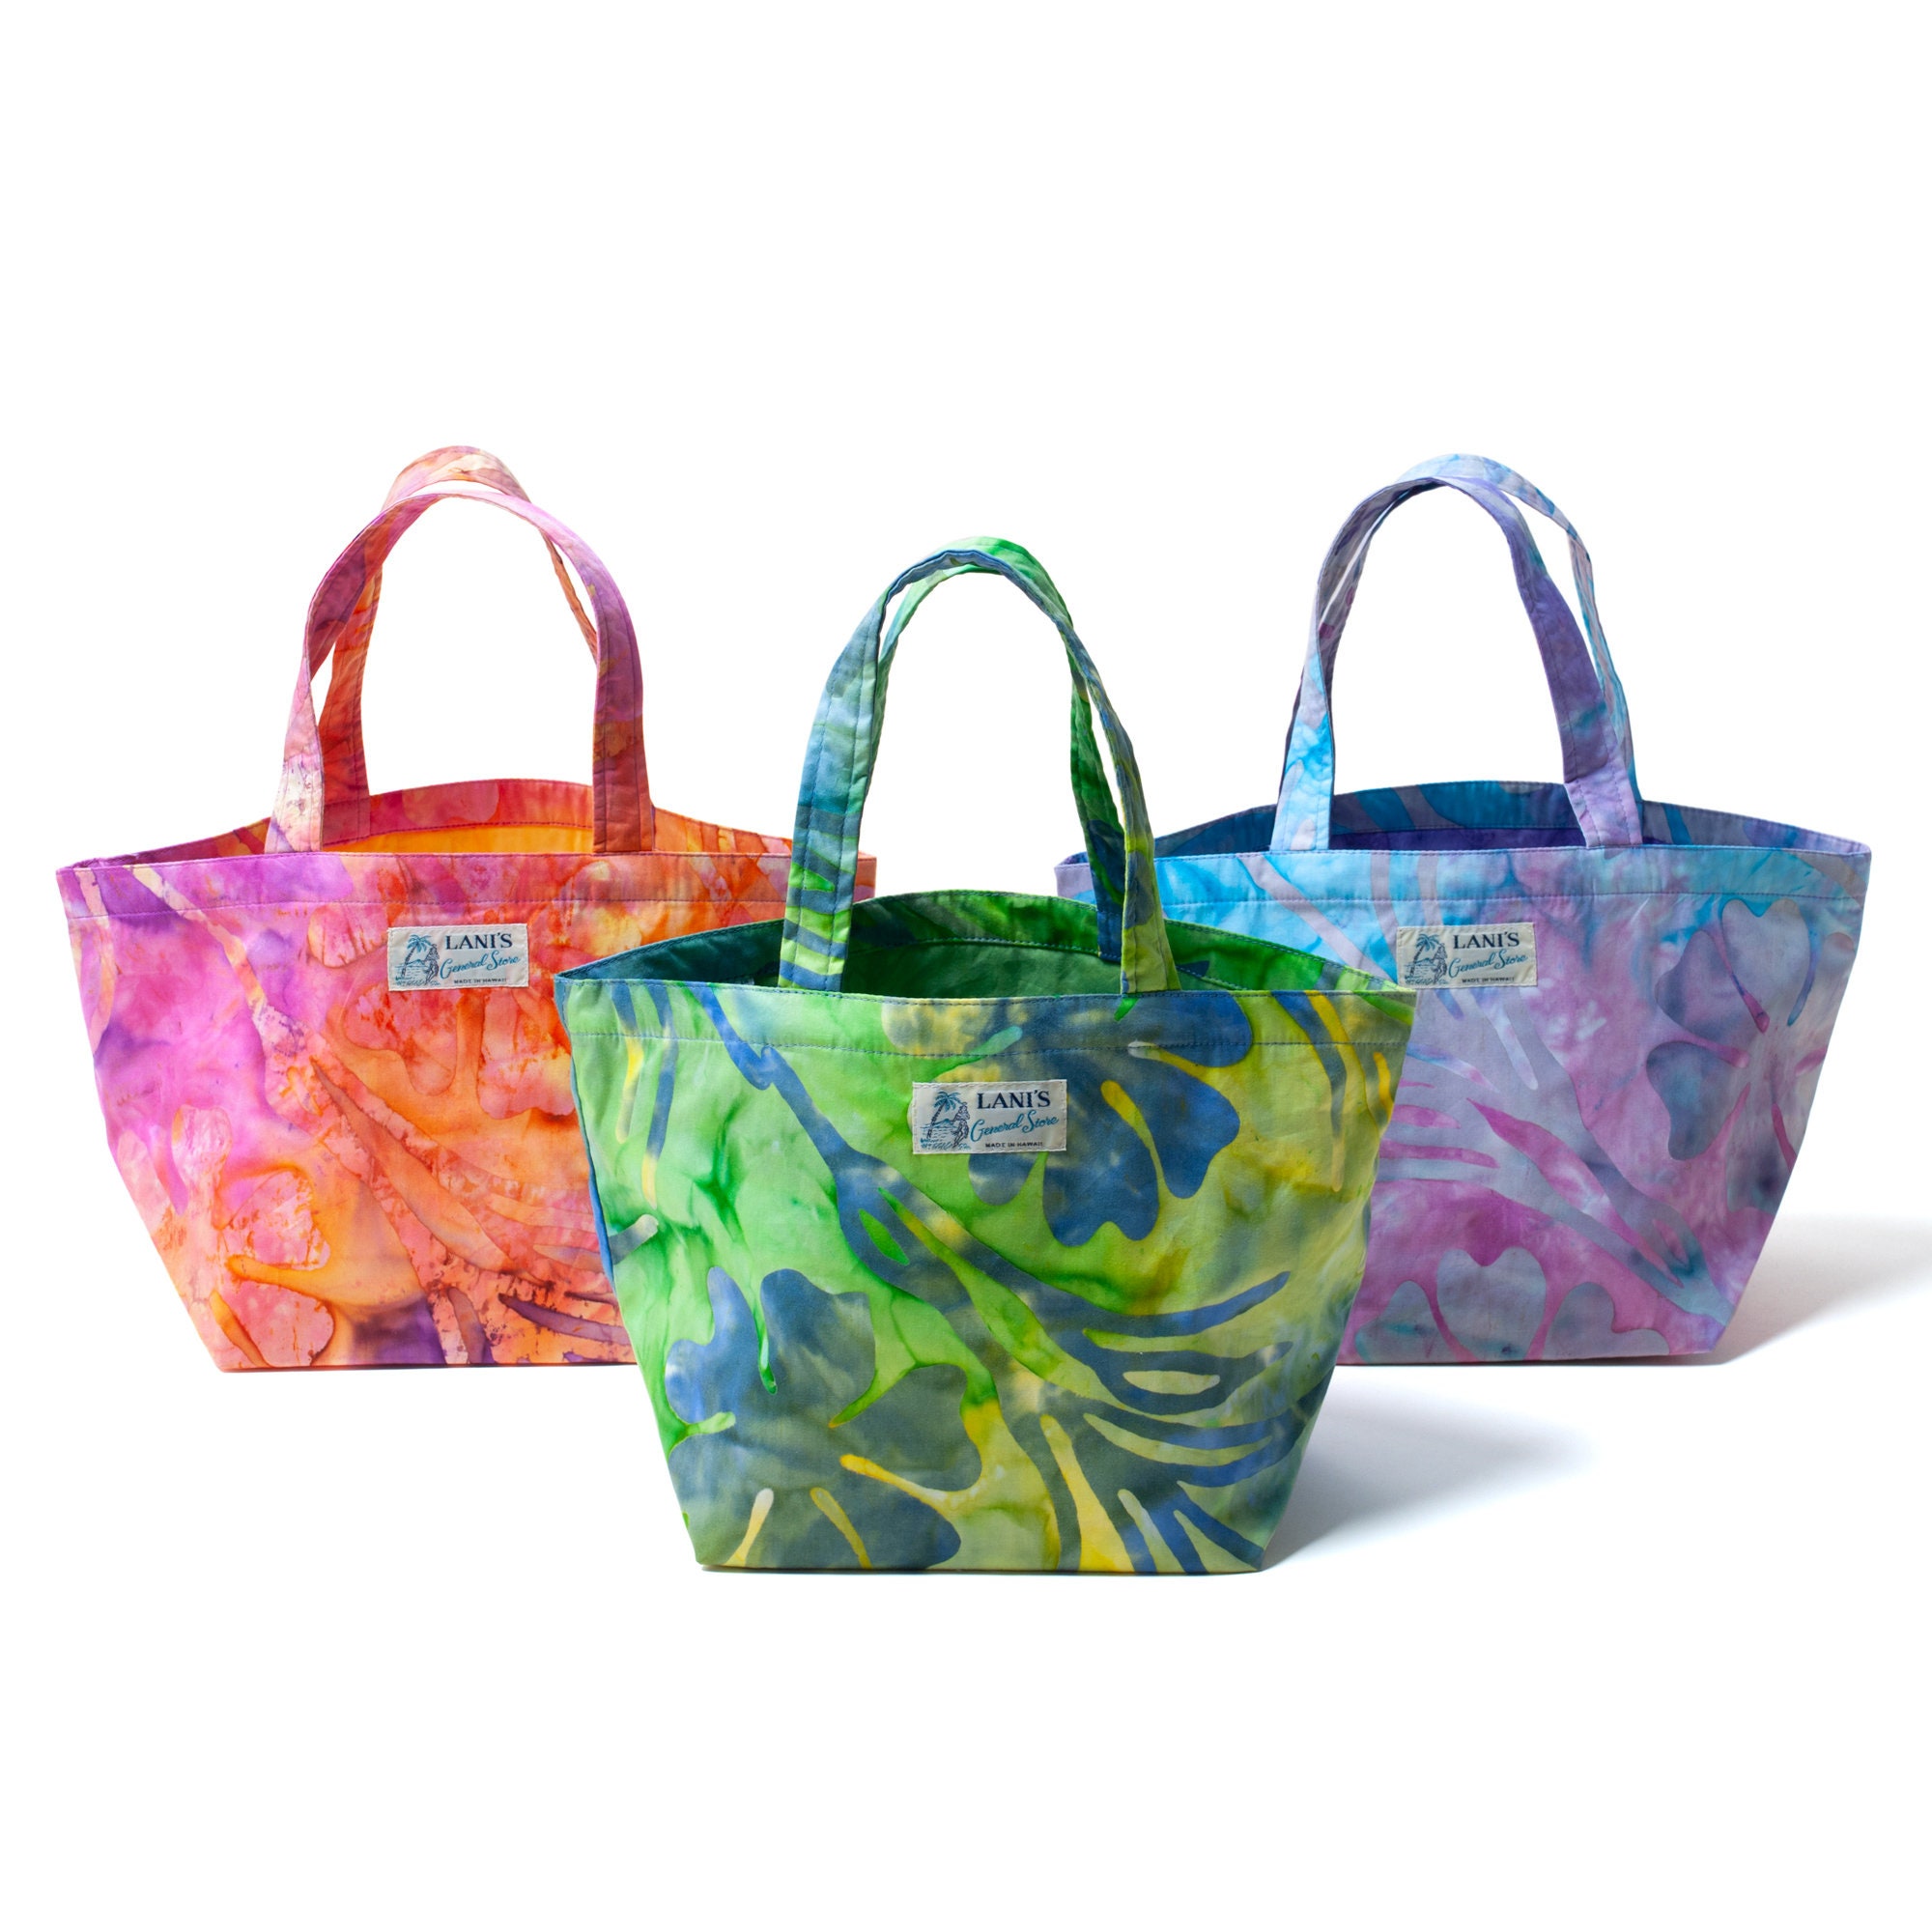 LANI'S General Store Tote Bag (Batik) / Made in Hawaii U.S.A.